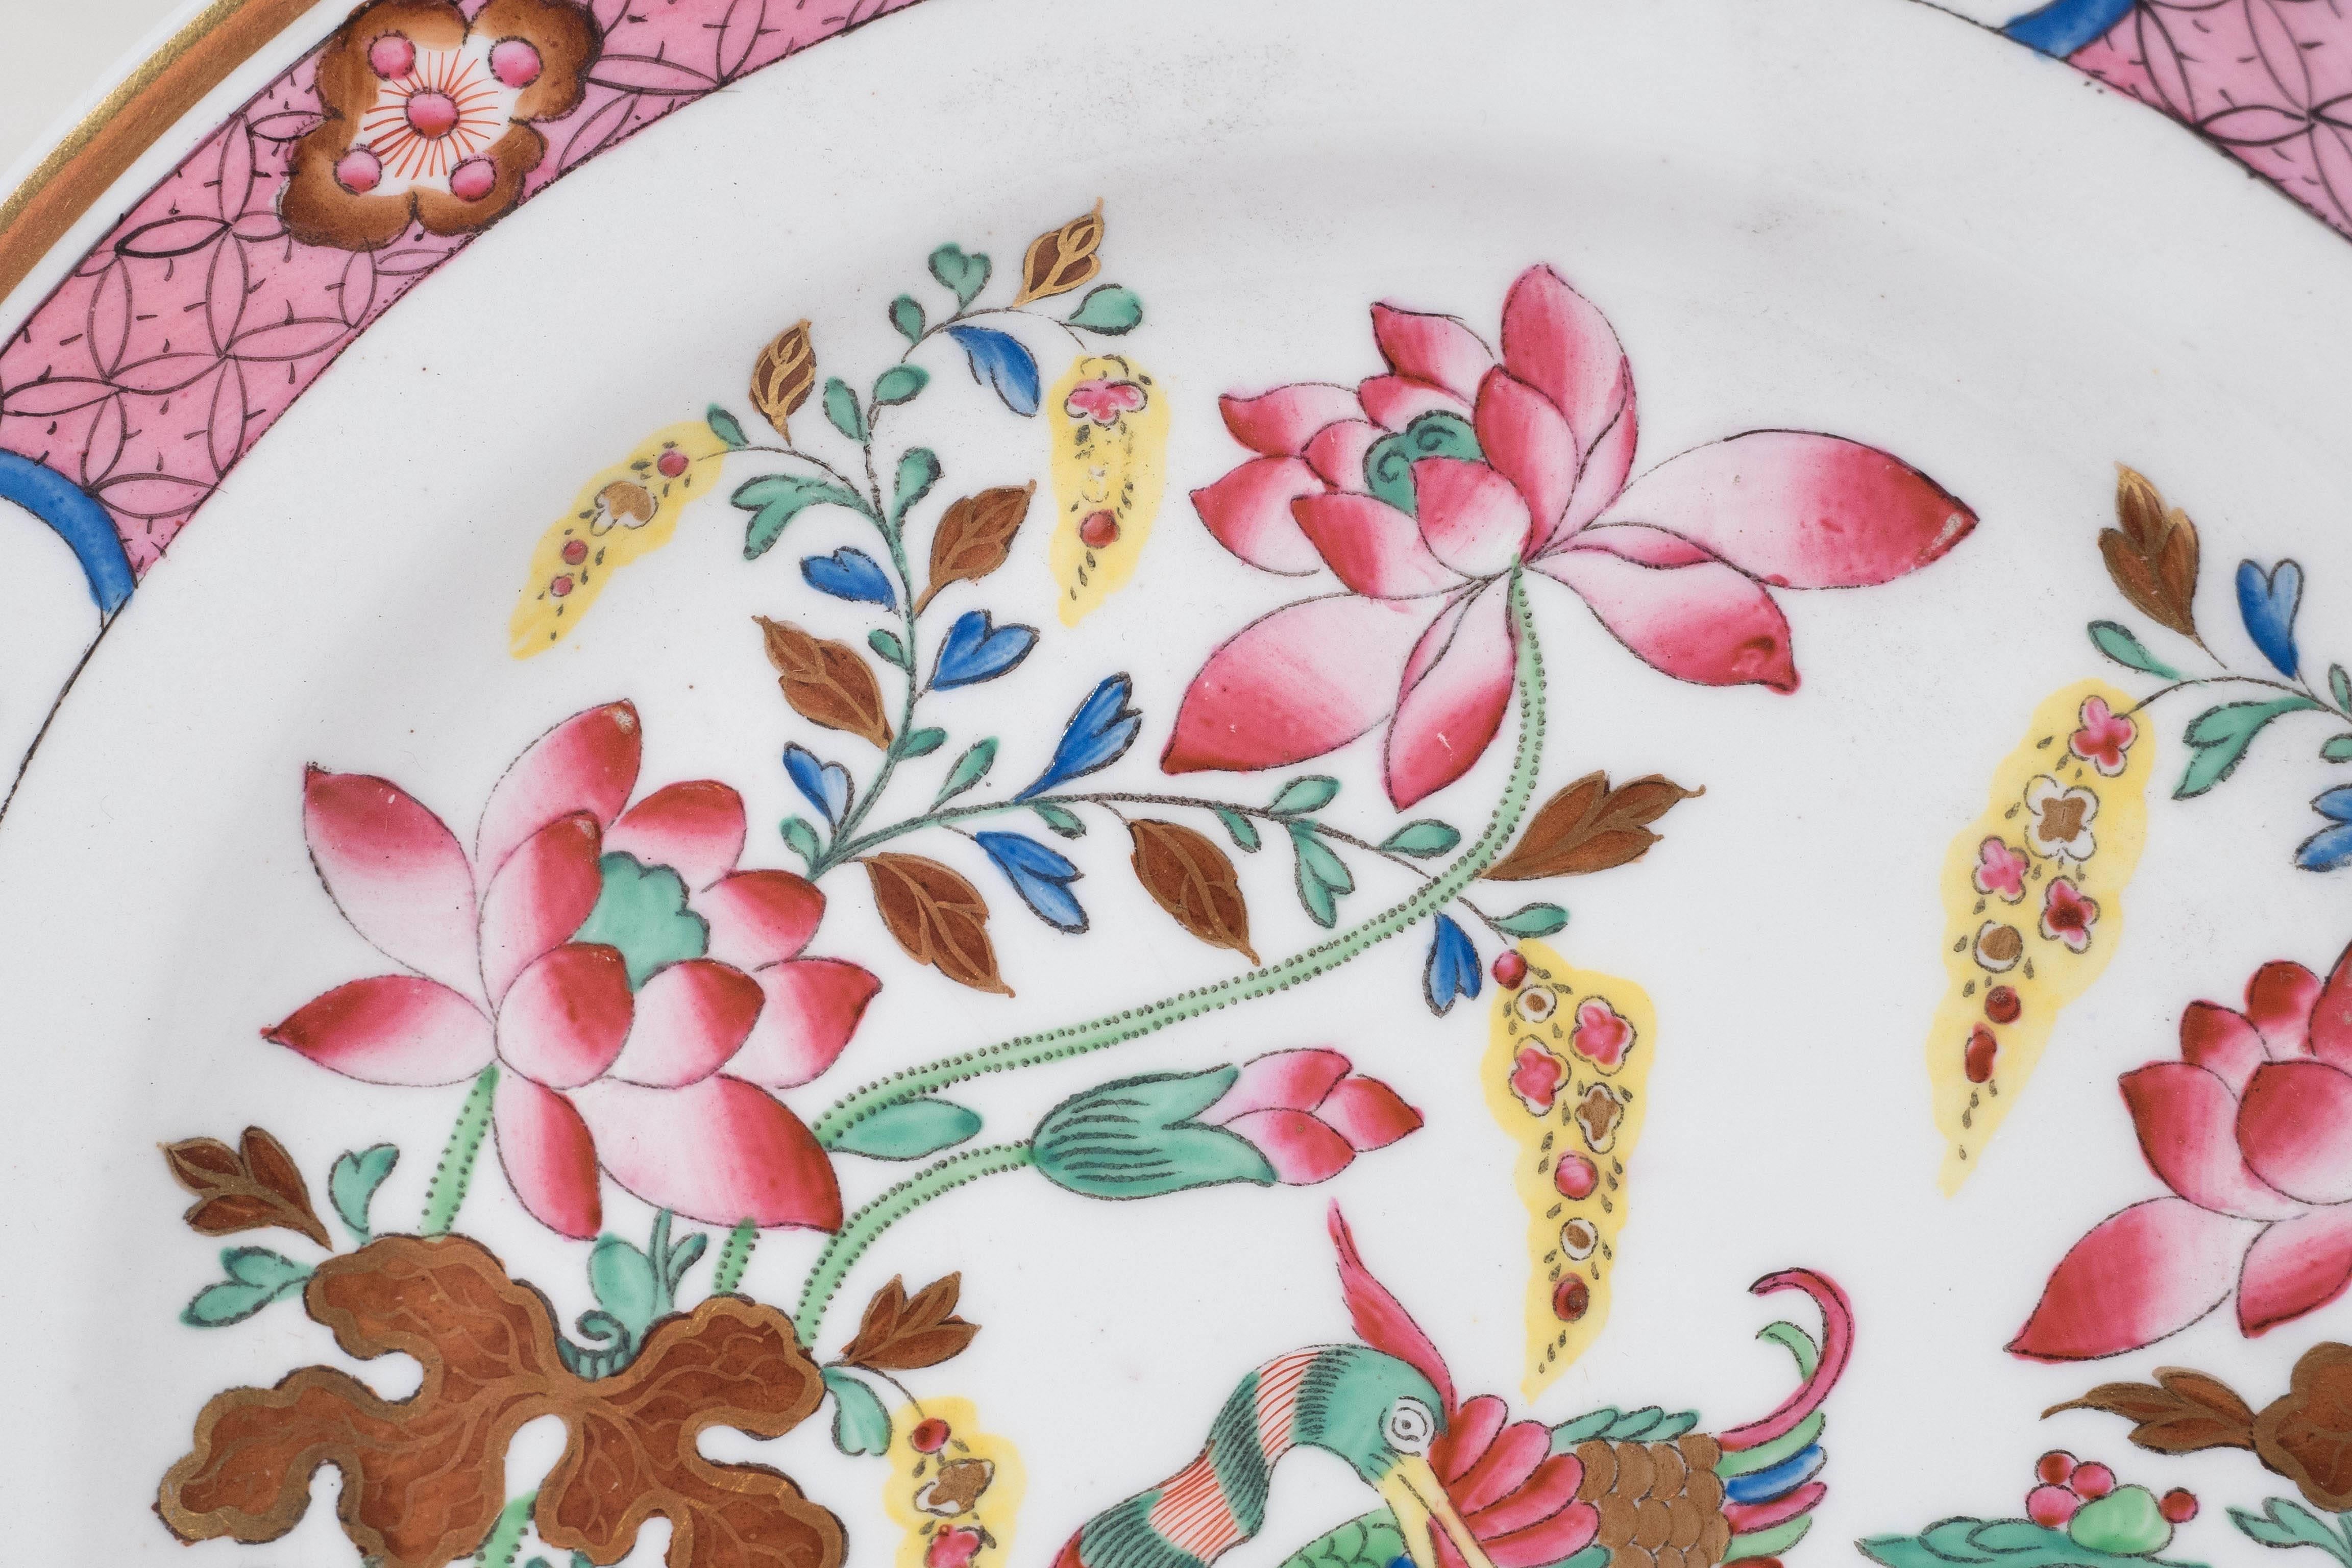 16 rosafarbene antike Porzellanteller mit Mandarin-Enten-Muster aus der Zeit um 1820 (Qing-Dynastie)